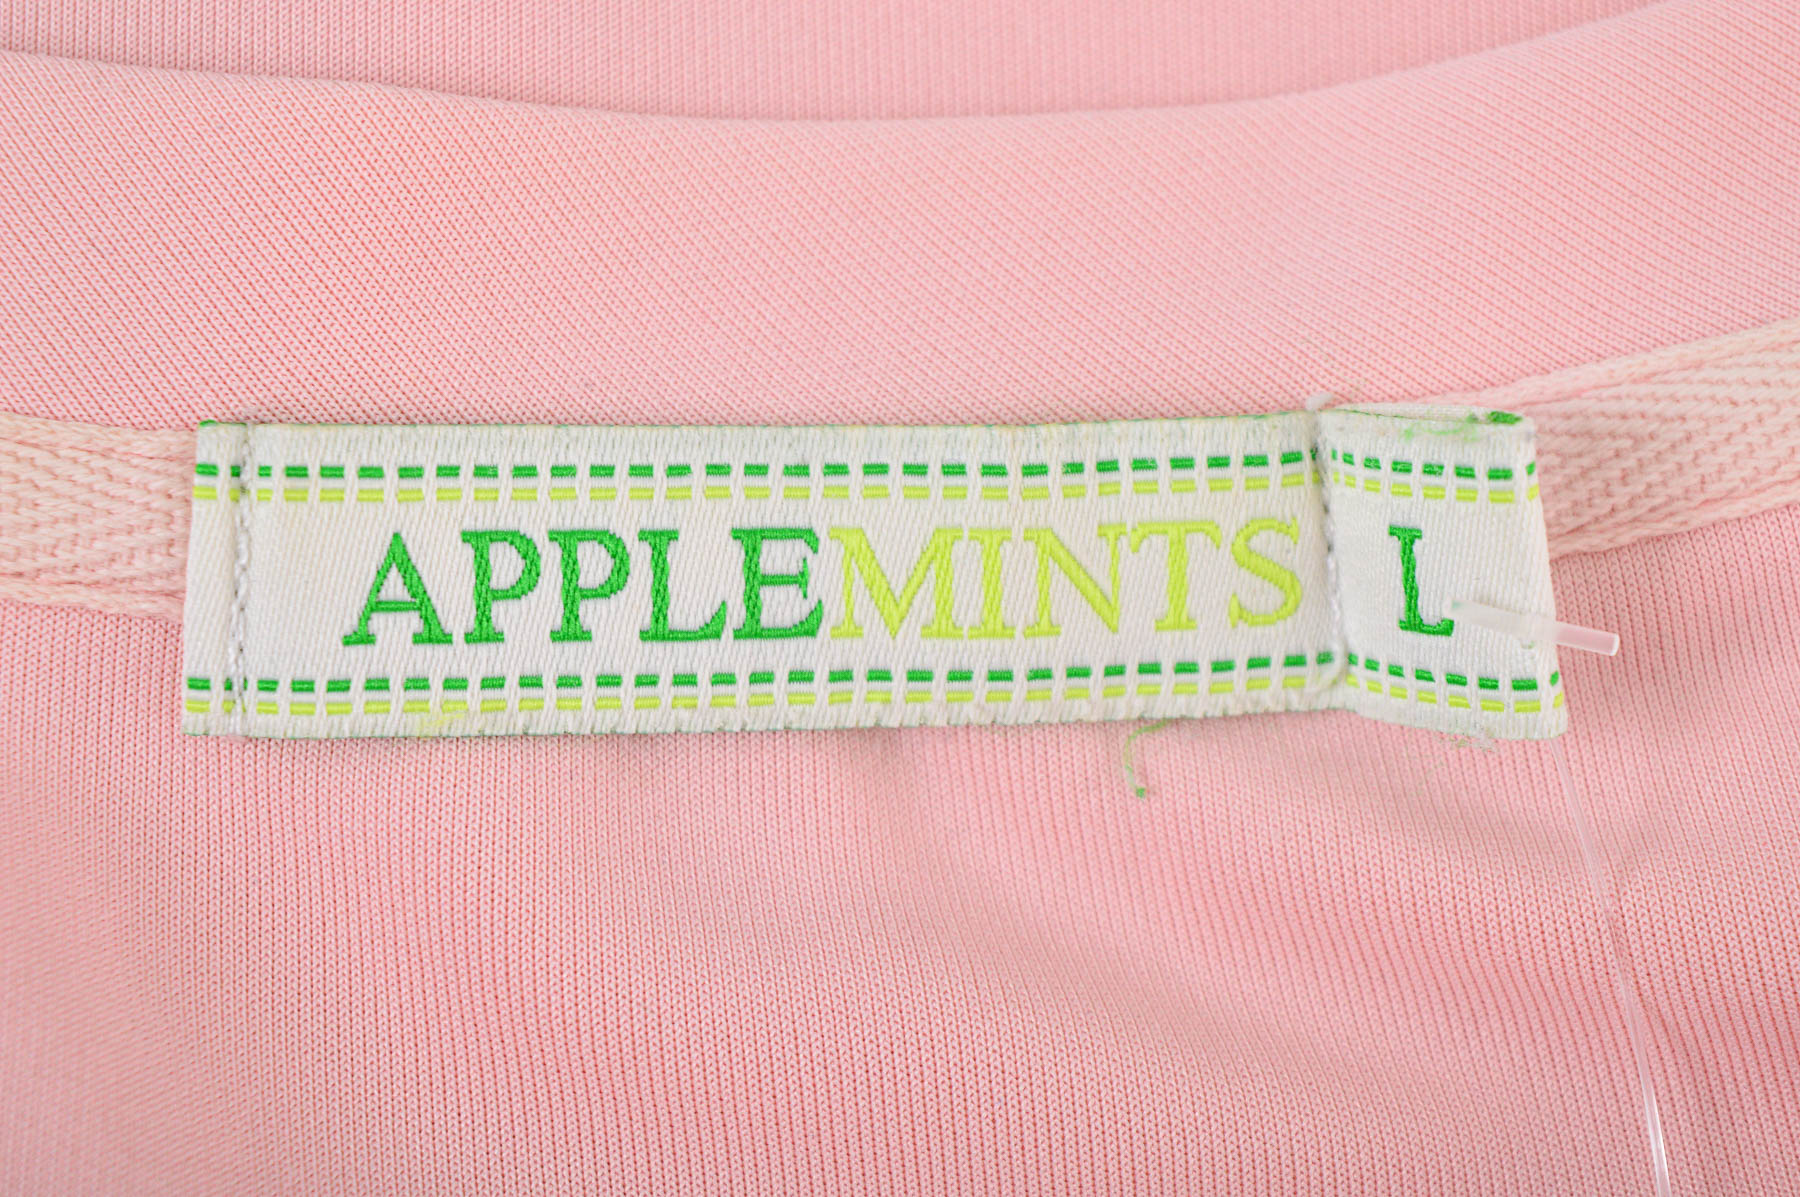 Γυναικεία μπλούζα - Applemints - 2